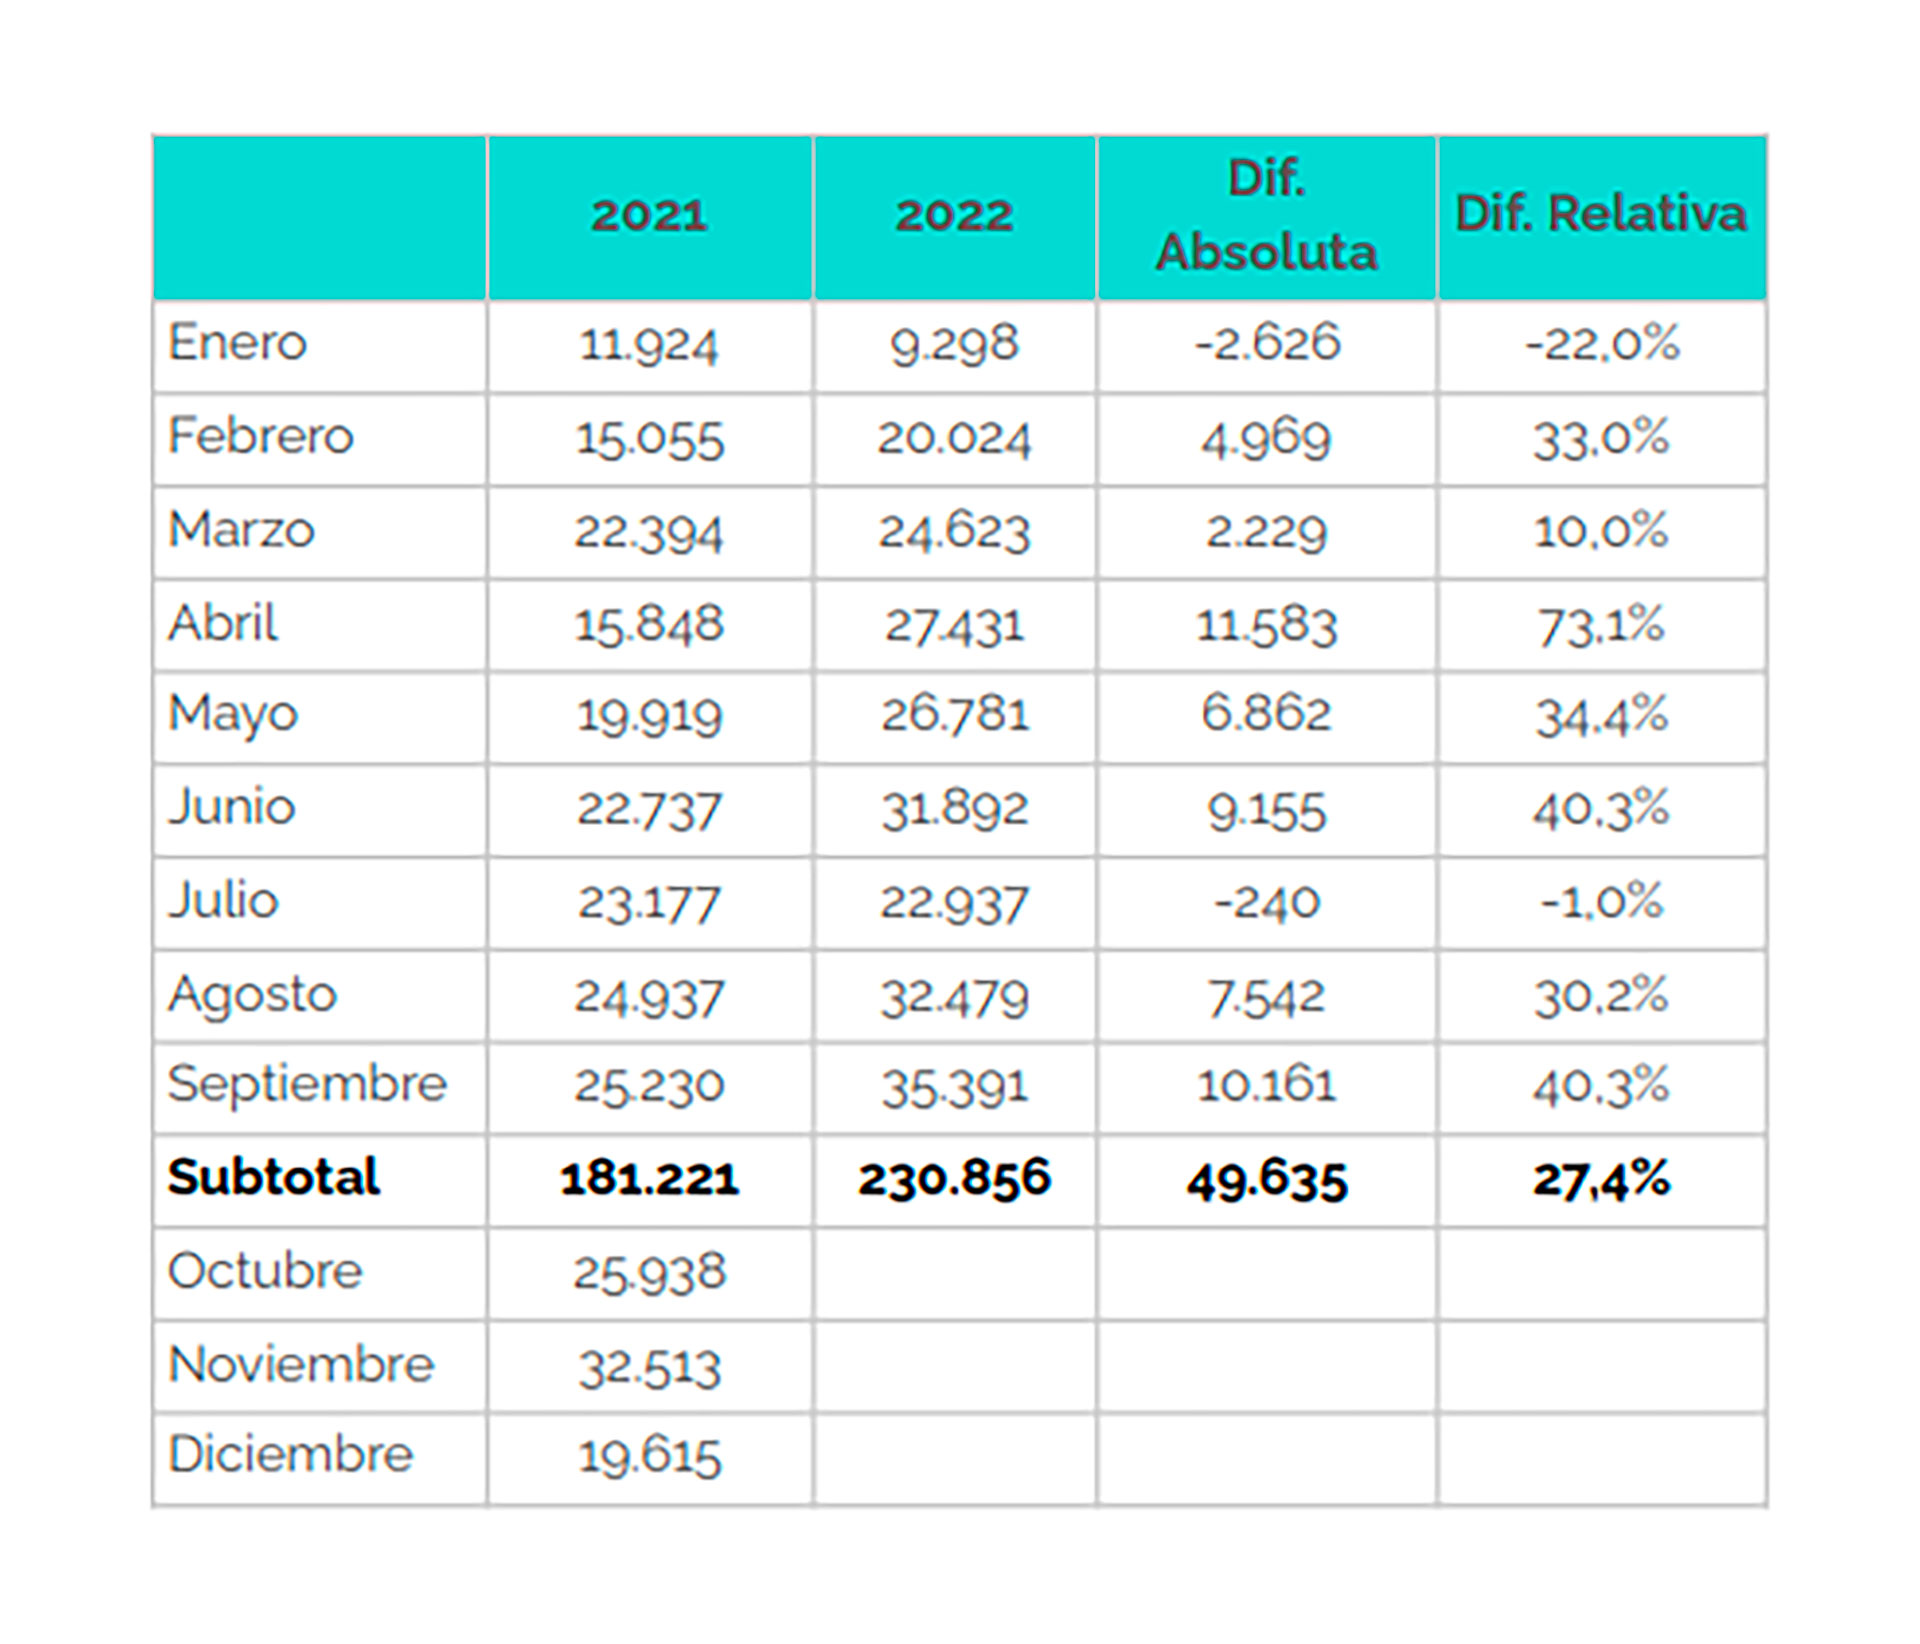 Producción de Automóviles en la Argentina
Fuente: Adefa